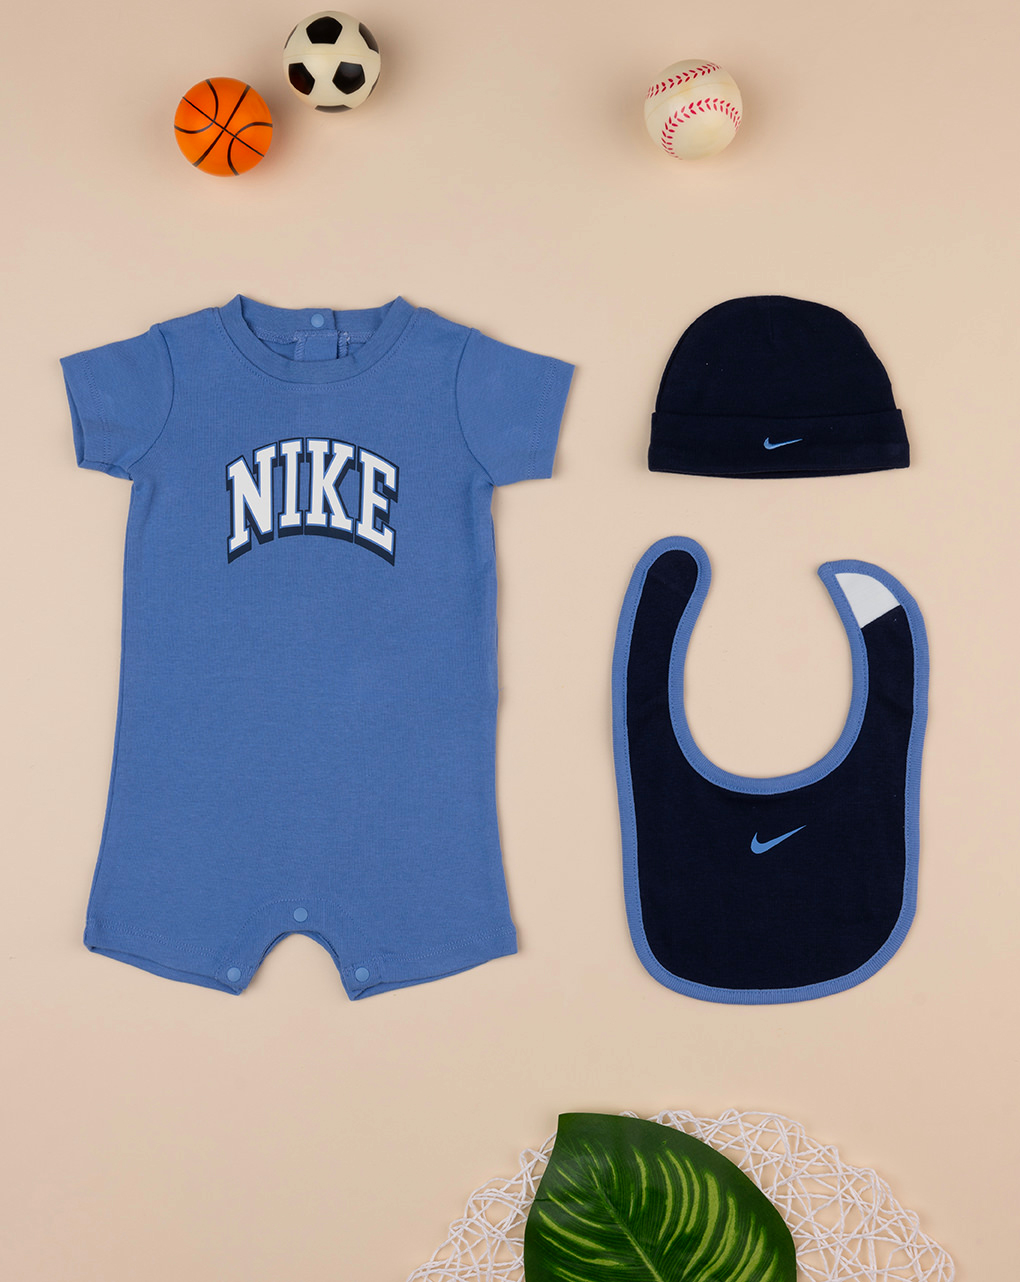 Nike αθλητικό σετ nn1049-bgz για νεογέννητο αγόρι - Nike